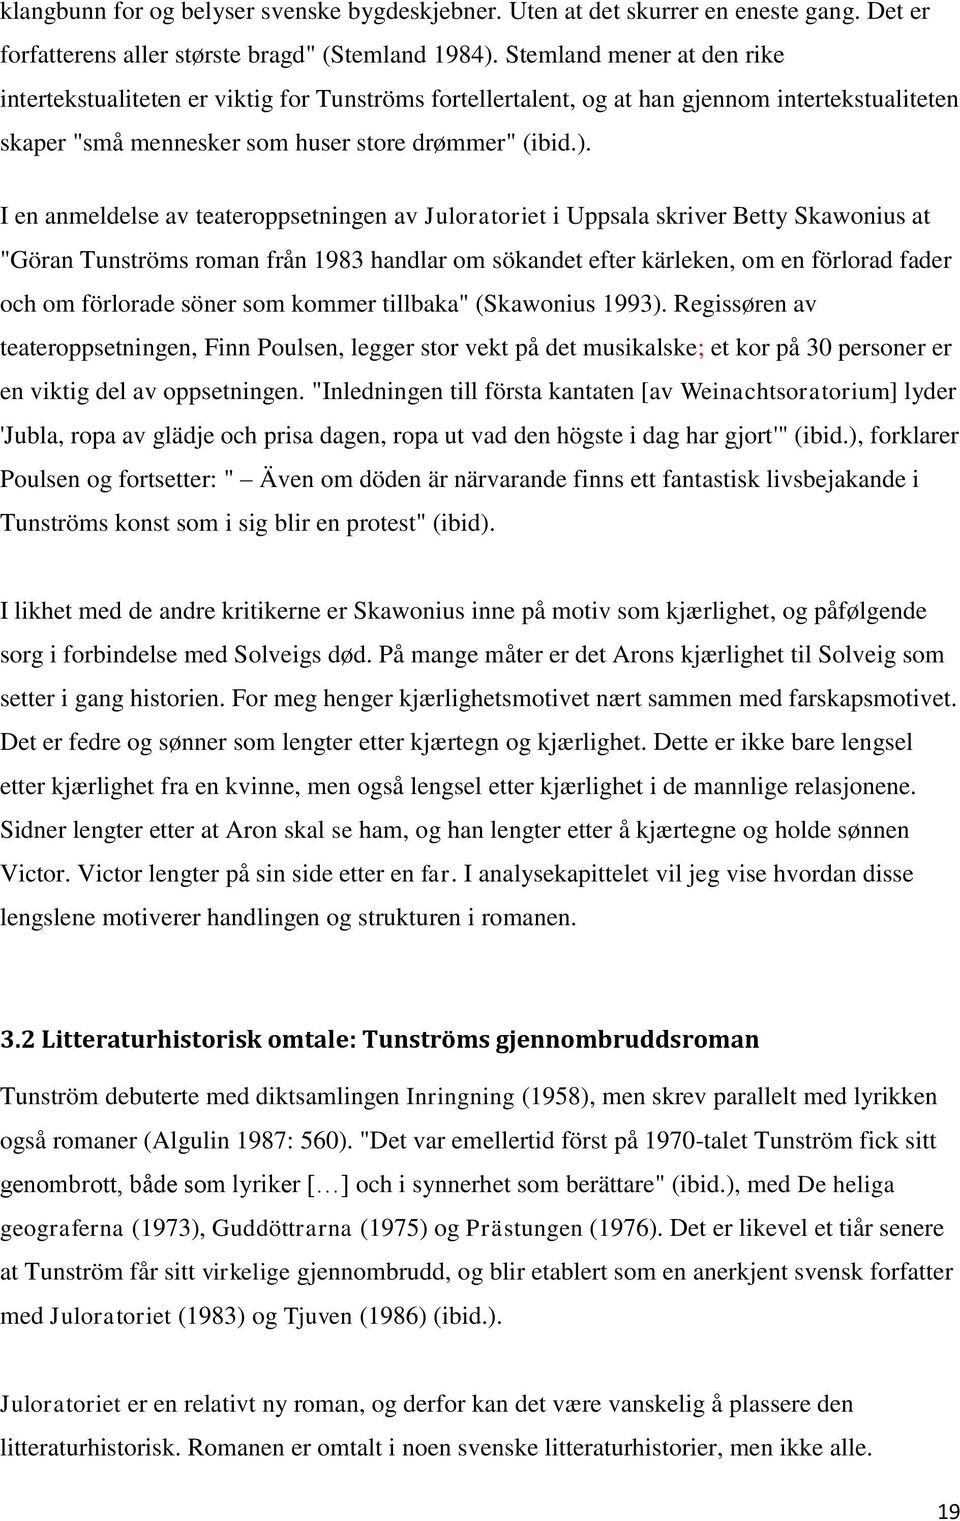 I en anmeldelse av teateroppsetningen av Juloratoriet i Uppsala skriver Betty Skawonius at "Göran Tunströms roman från 1983 handlar om sökandet efter kärleken, om en förlorad fader och om förlorade